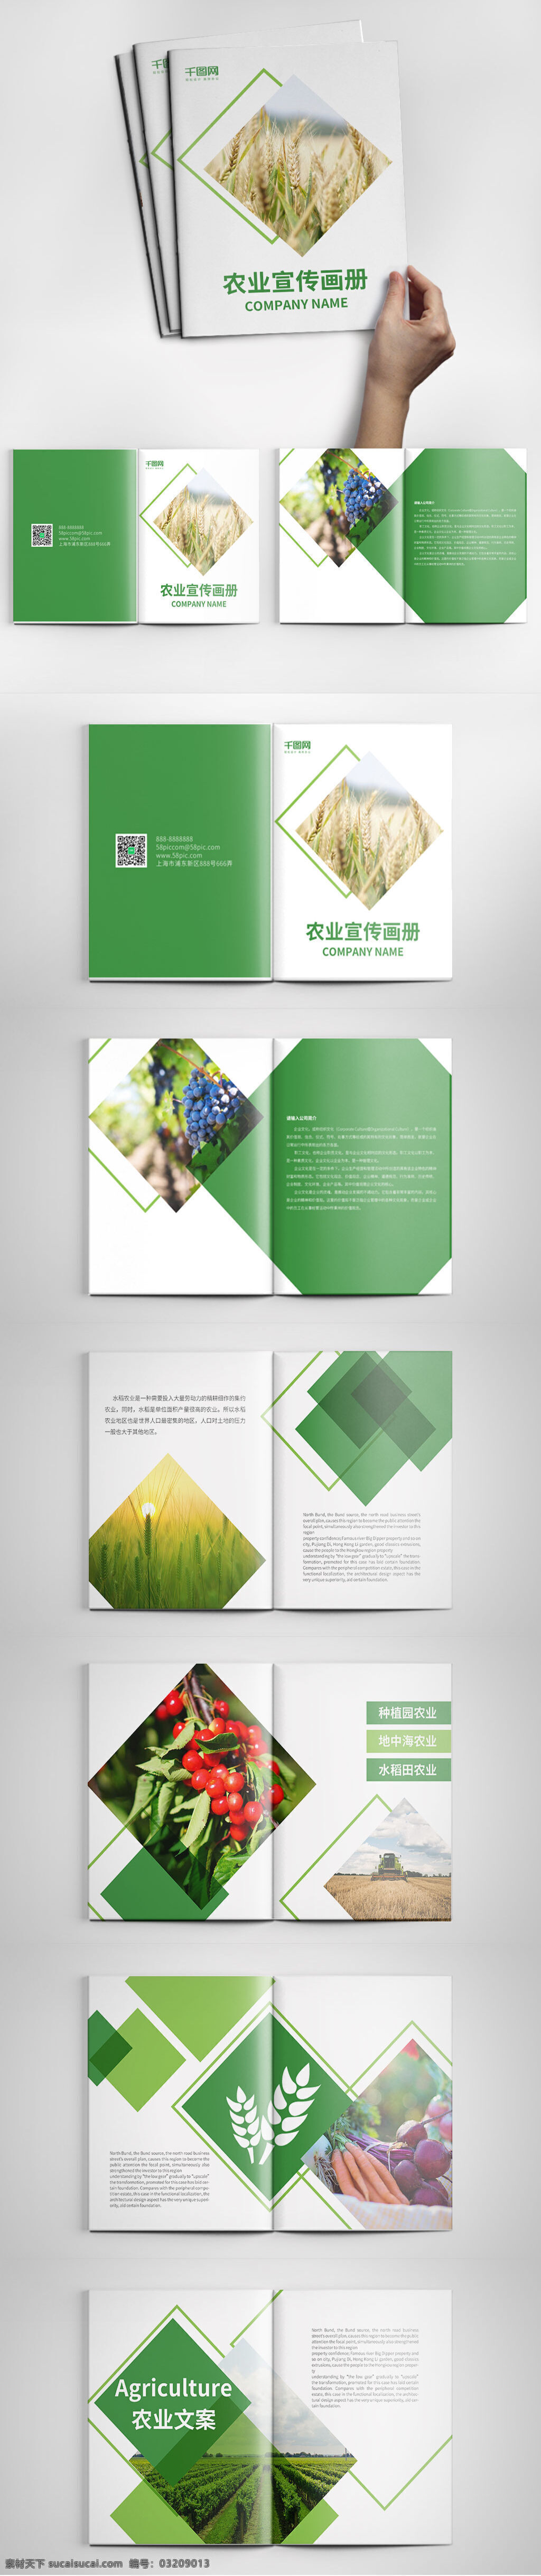 绿色农业 宣传画 册设计 模板 创意画册 大气画册 公司画册 画册模板 画册设计 绿色画册 农业画册 宣传画册